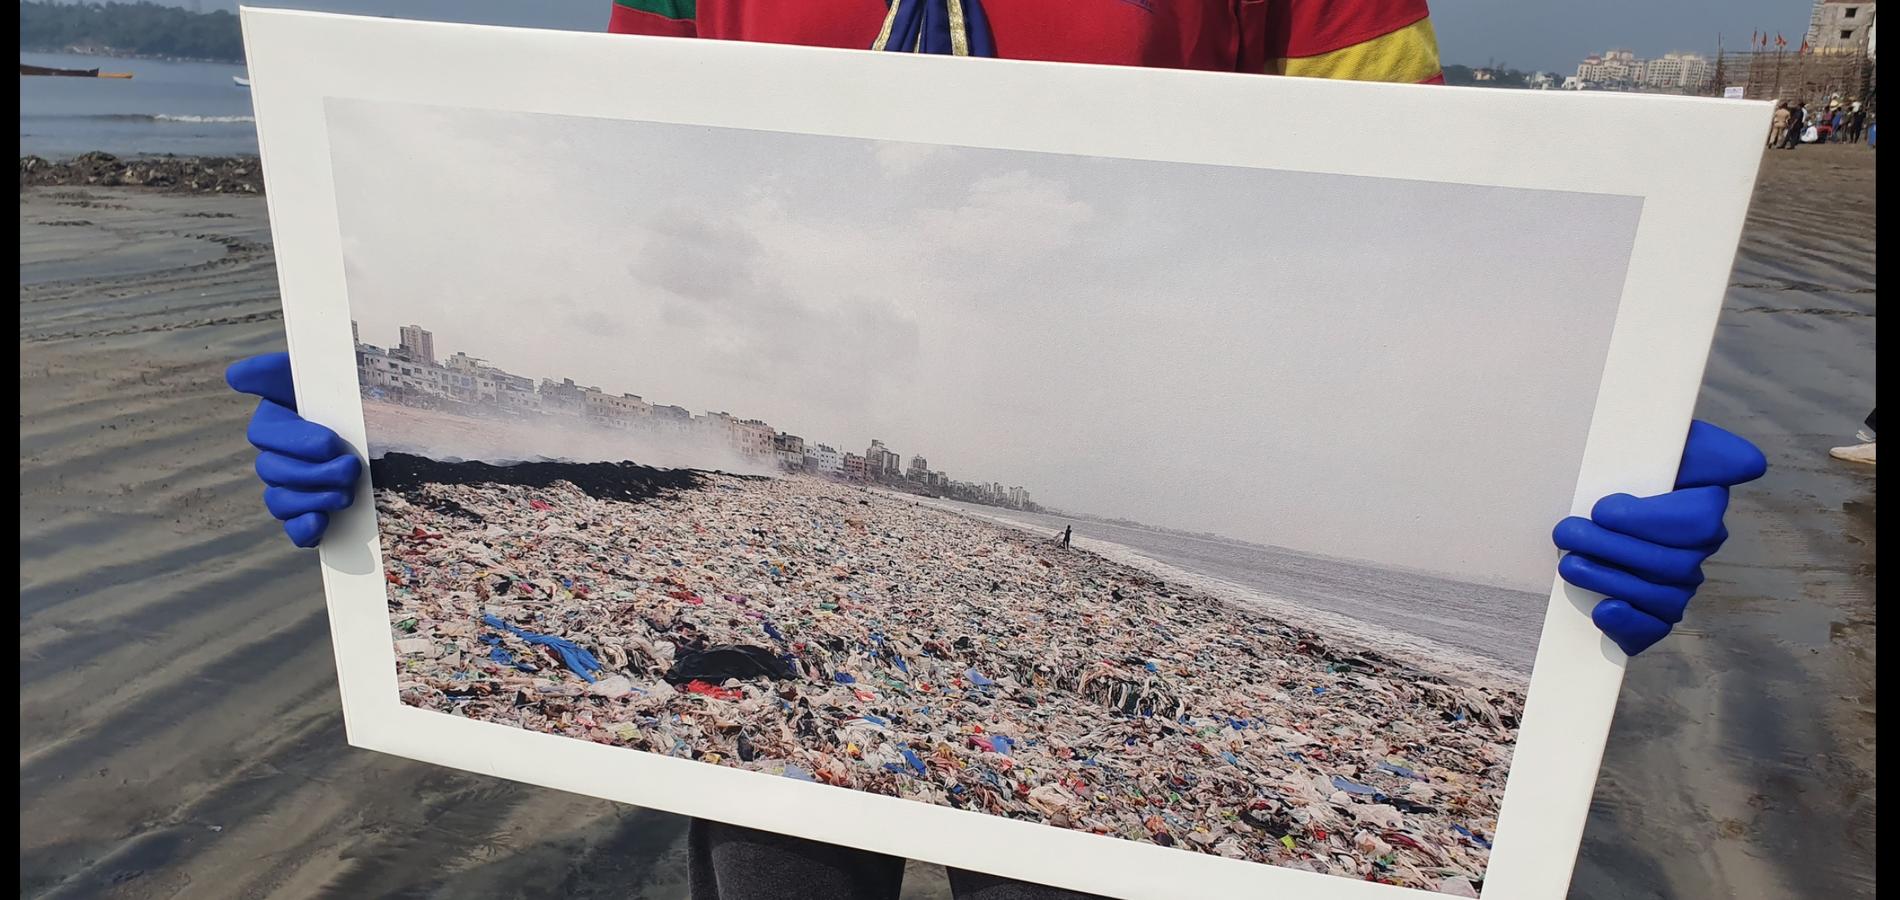 Så här såg Versova Beach ut fram till 2015.